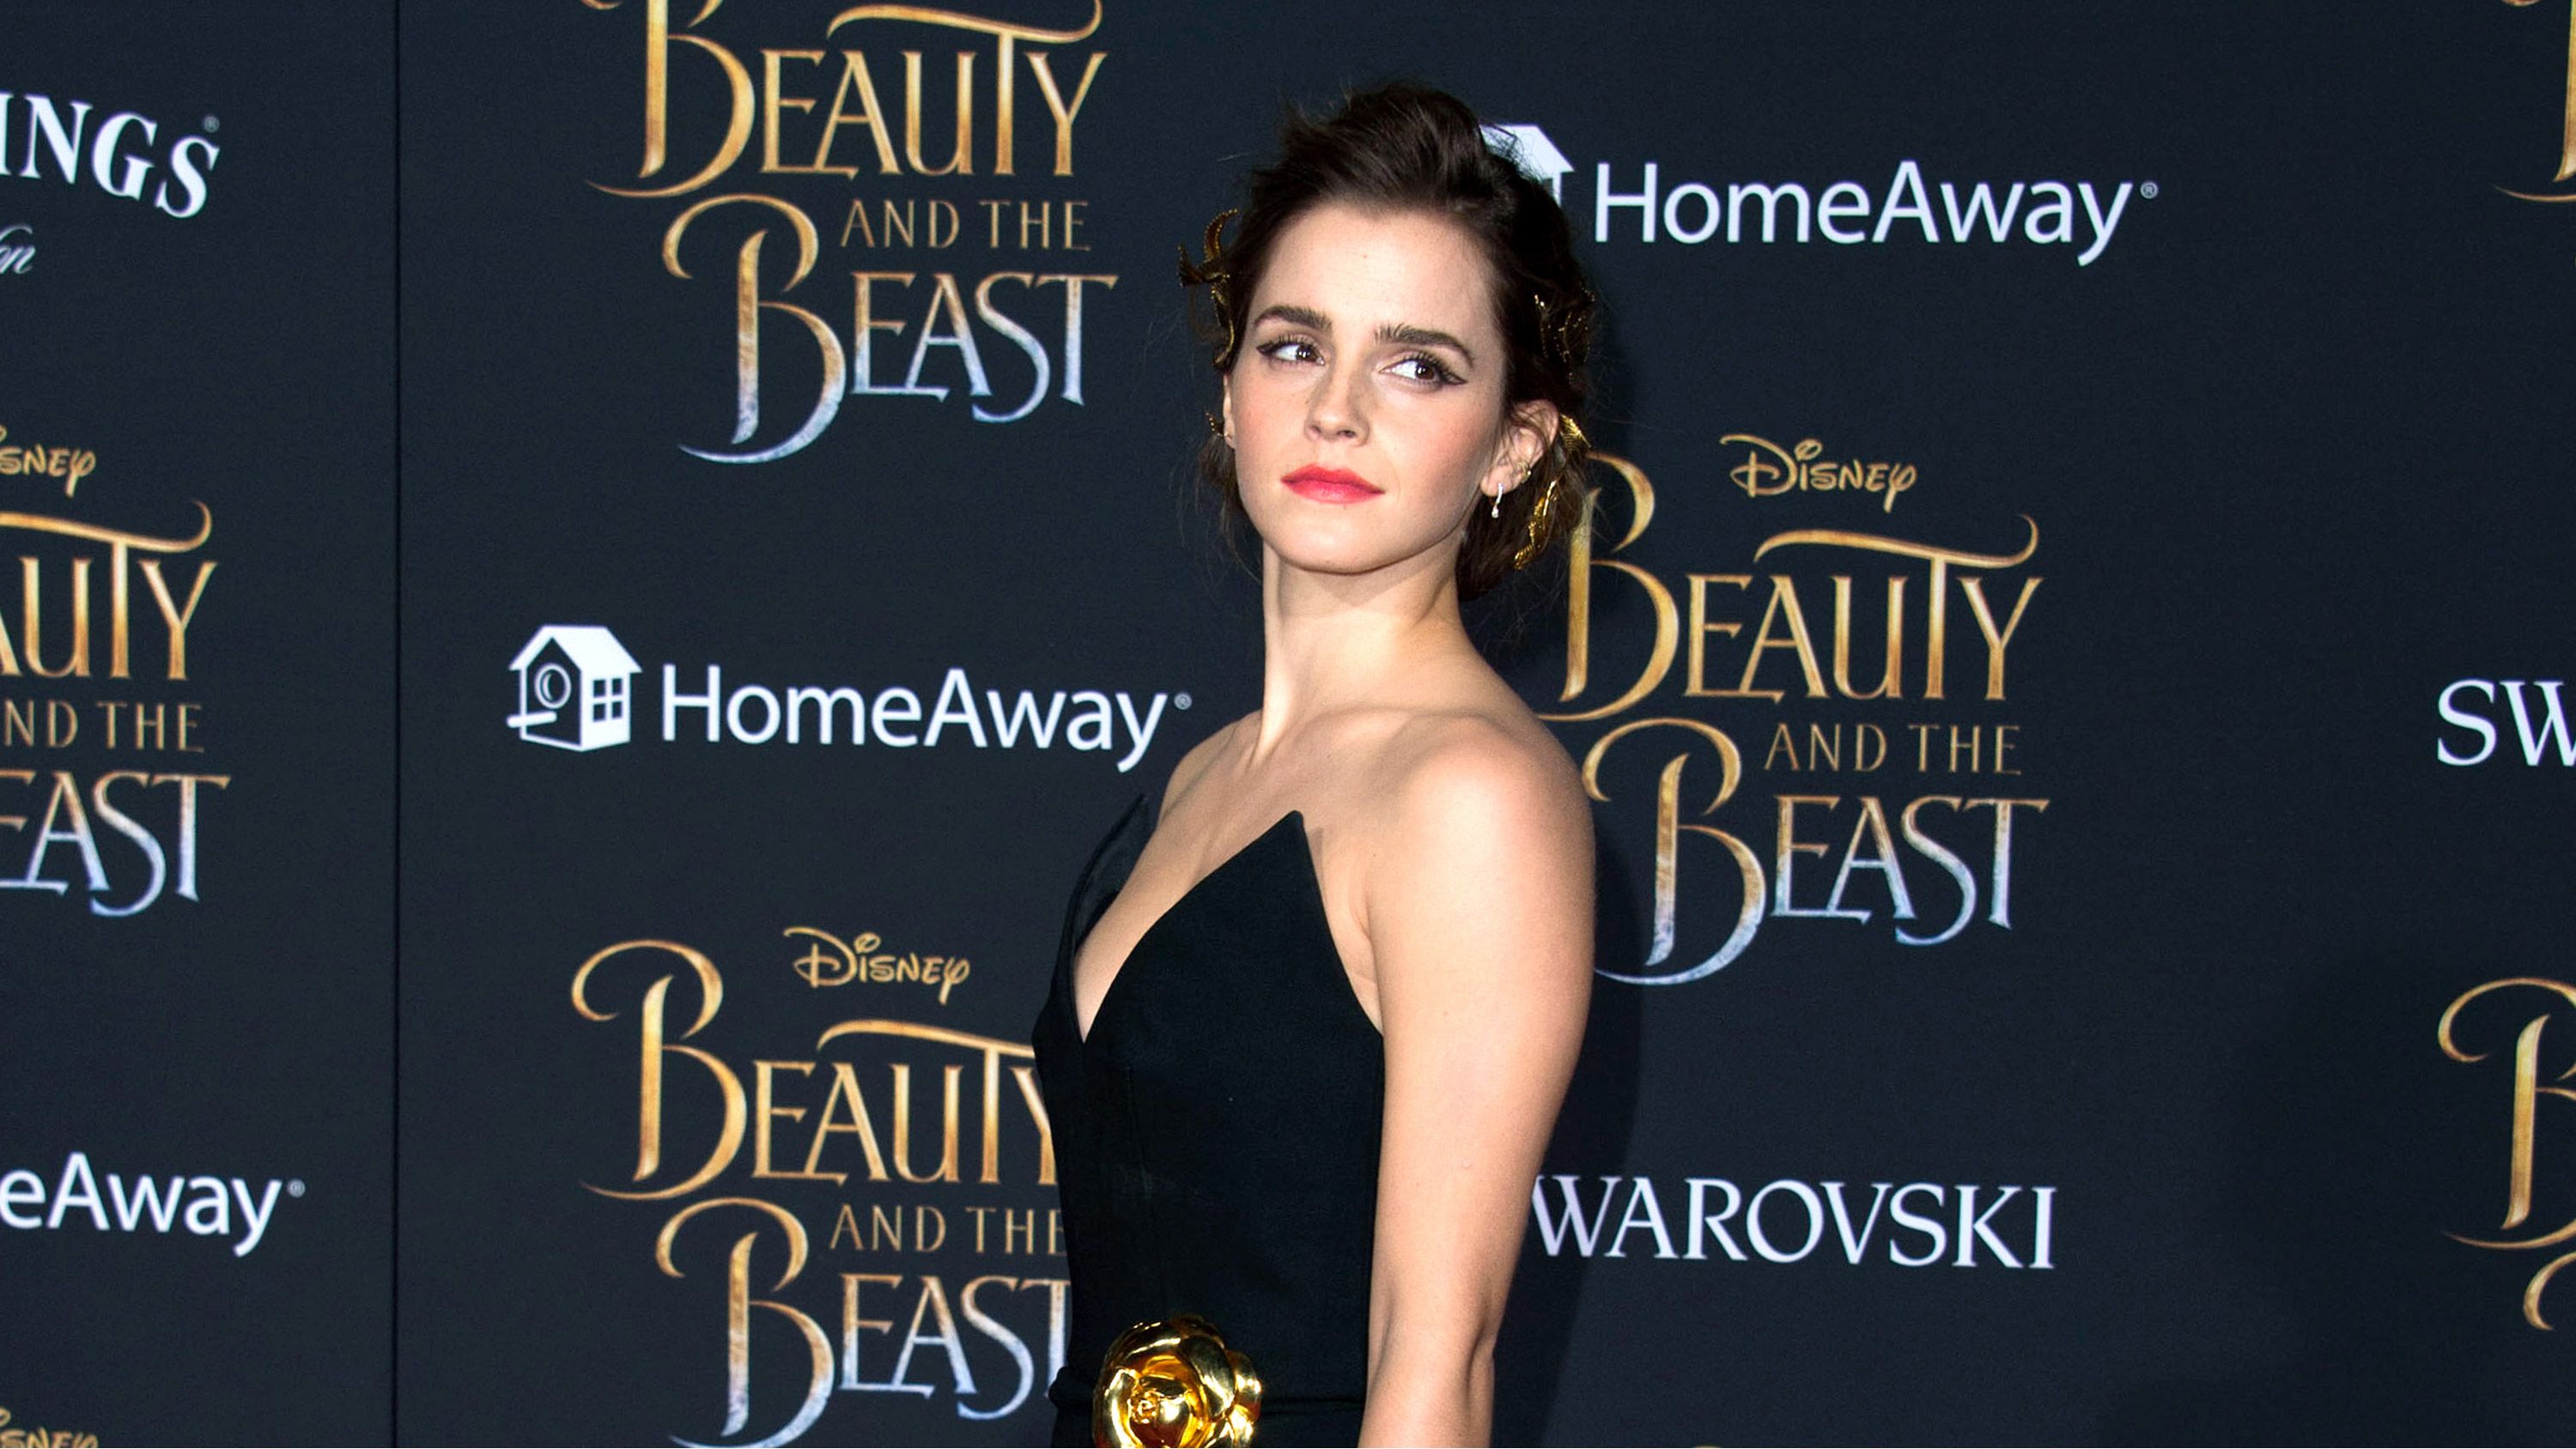 Emma Watson's revealing Vanity Fair photo: Feminism or hypocrisy